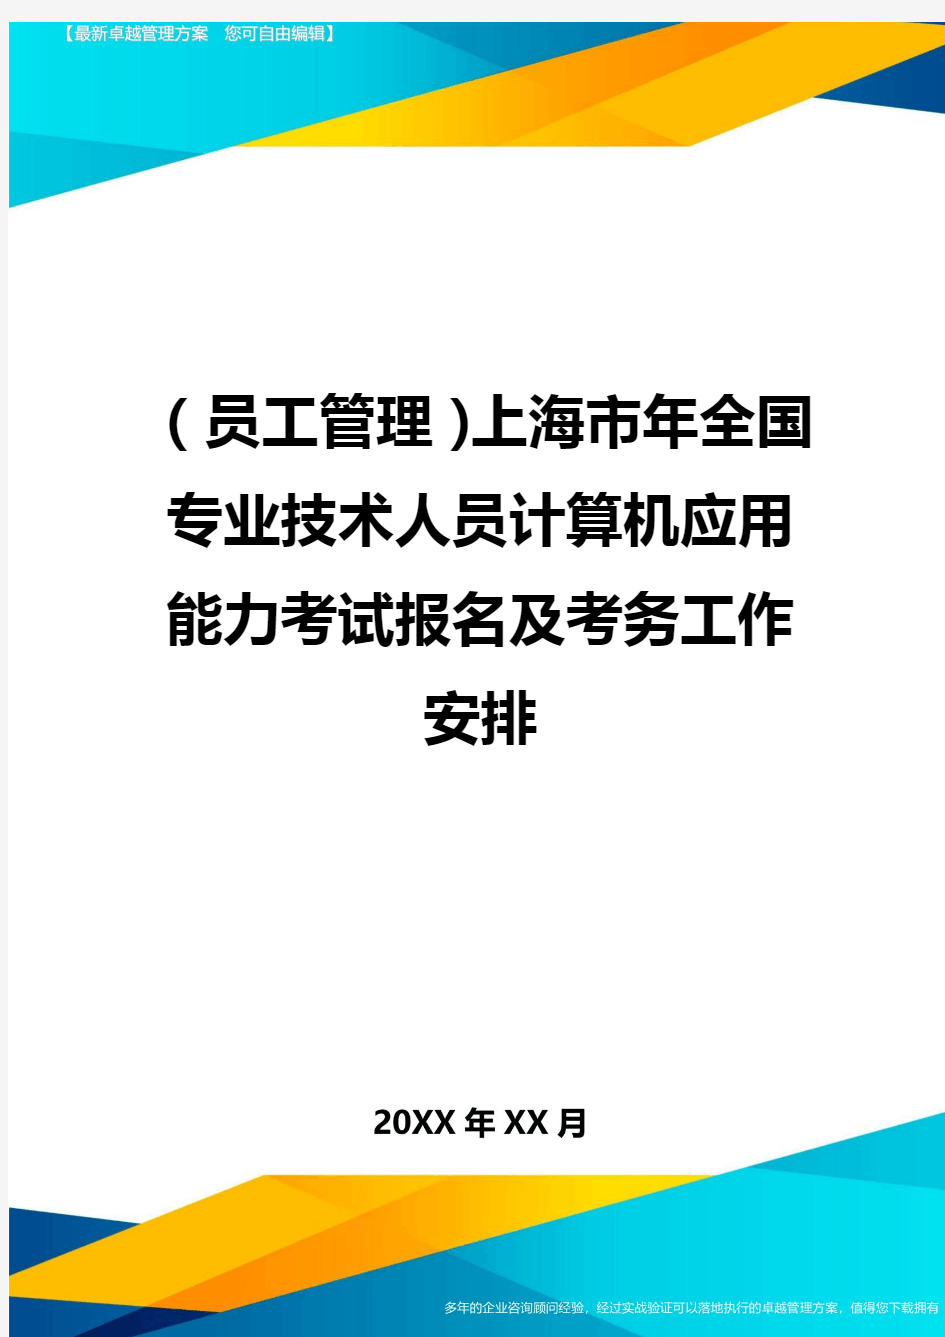 员工管理上海市年全国专业技术人员计算机应用能力考试报名及考务工作安排